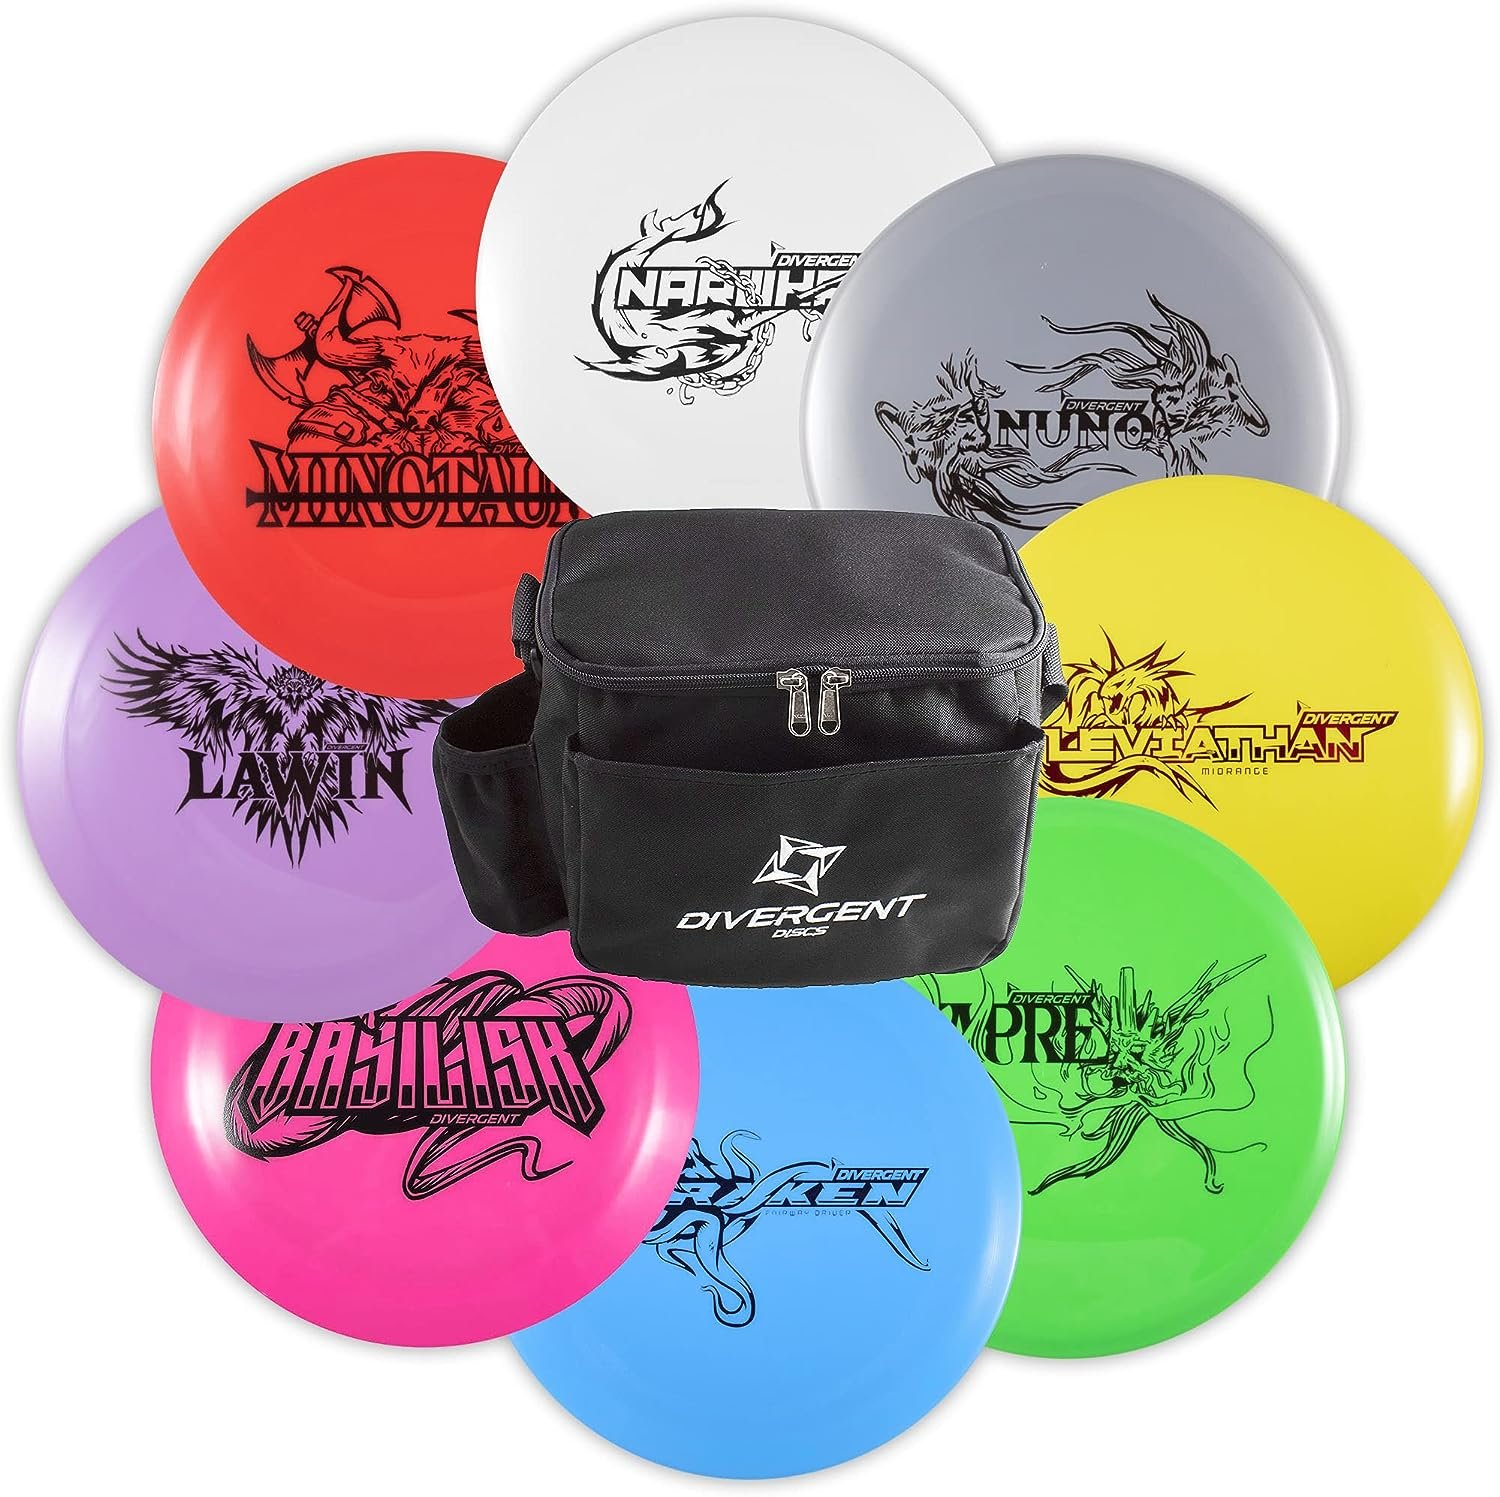 Divergent Discs 8-Disc Beginners Disc Golf Set with Starter Disc Golf Bag